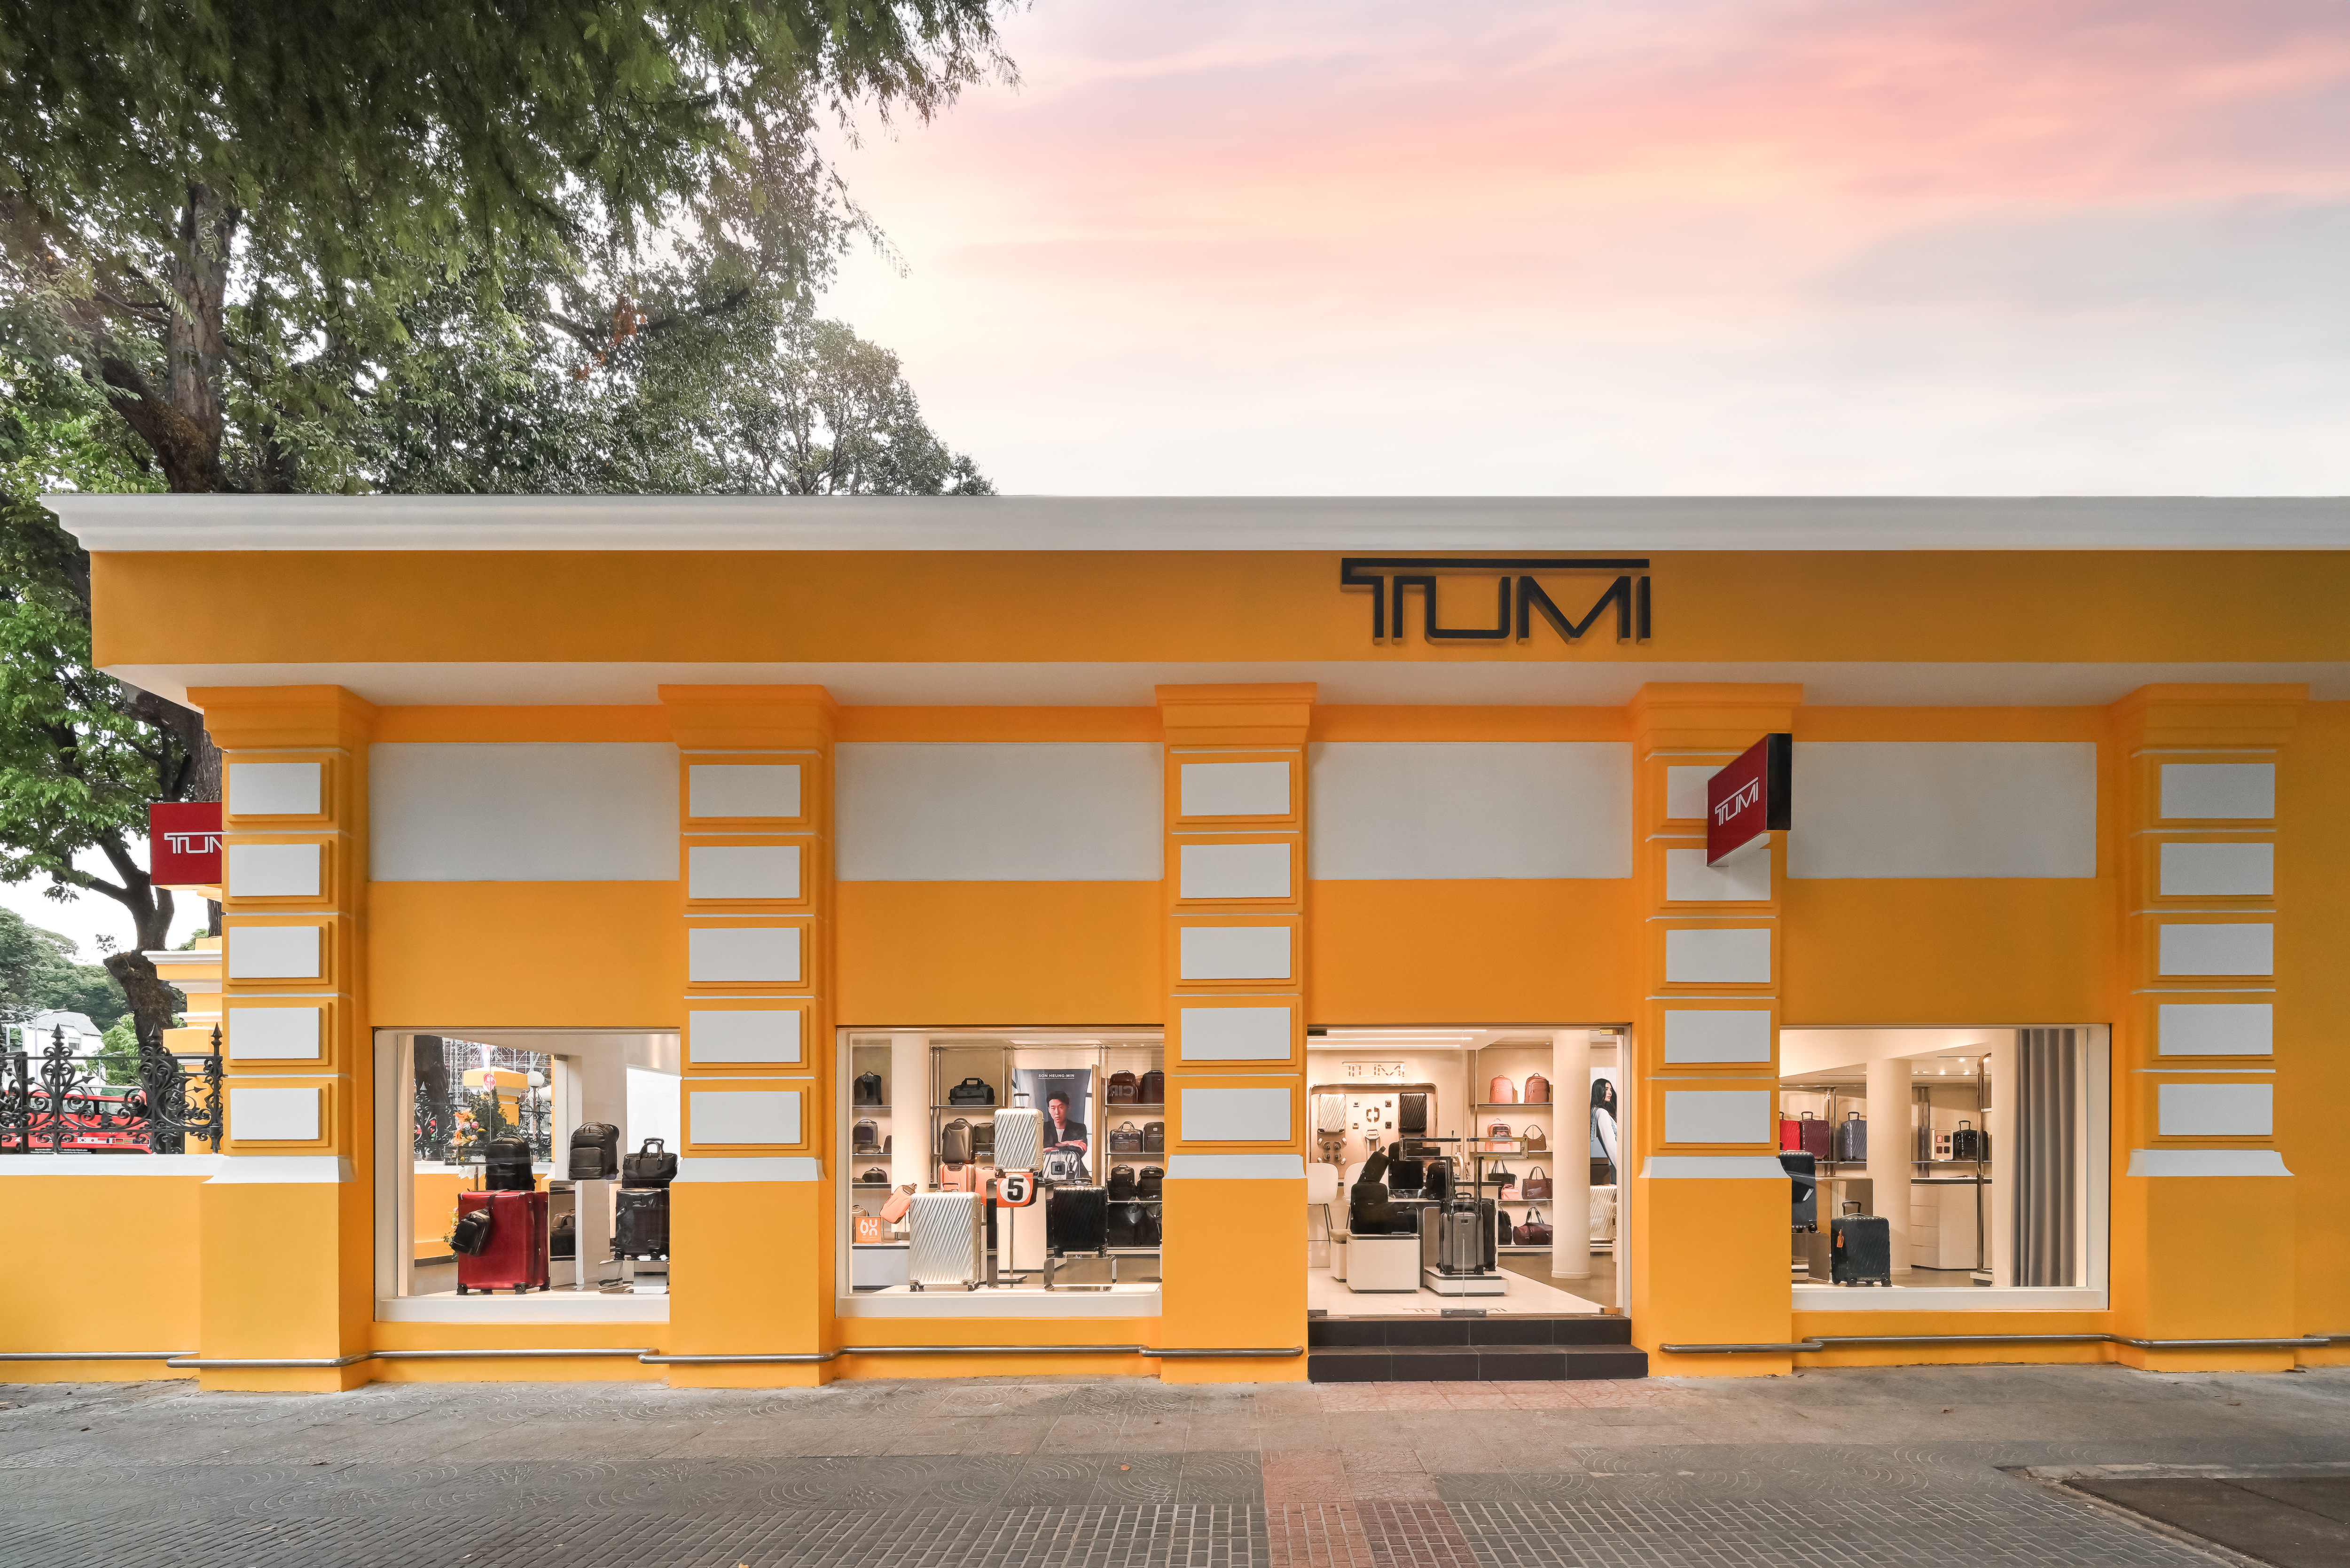 TUMI khai trương cửa hàng mới